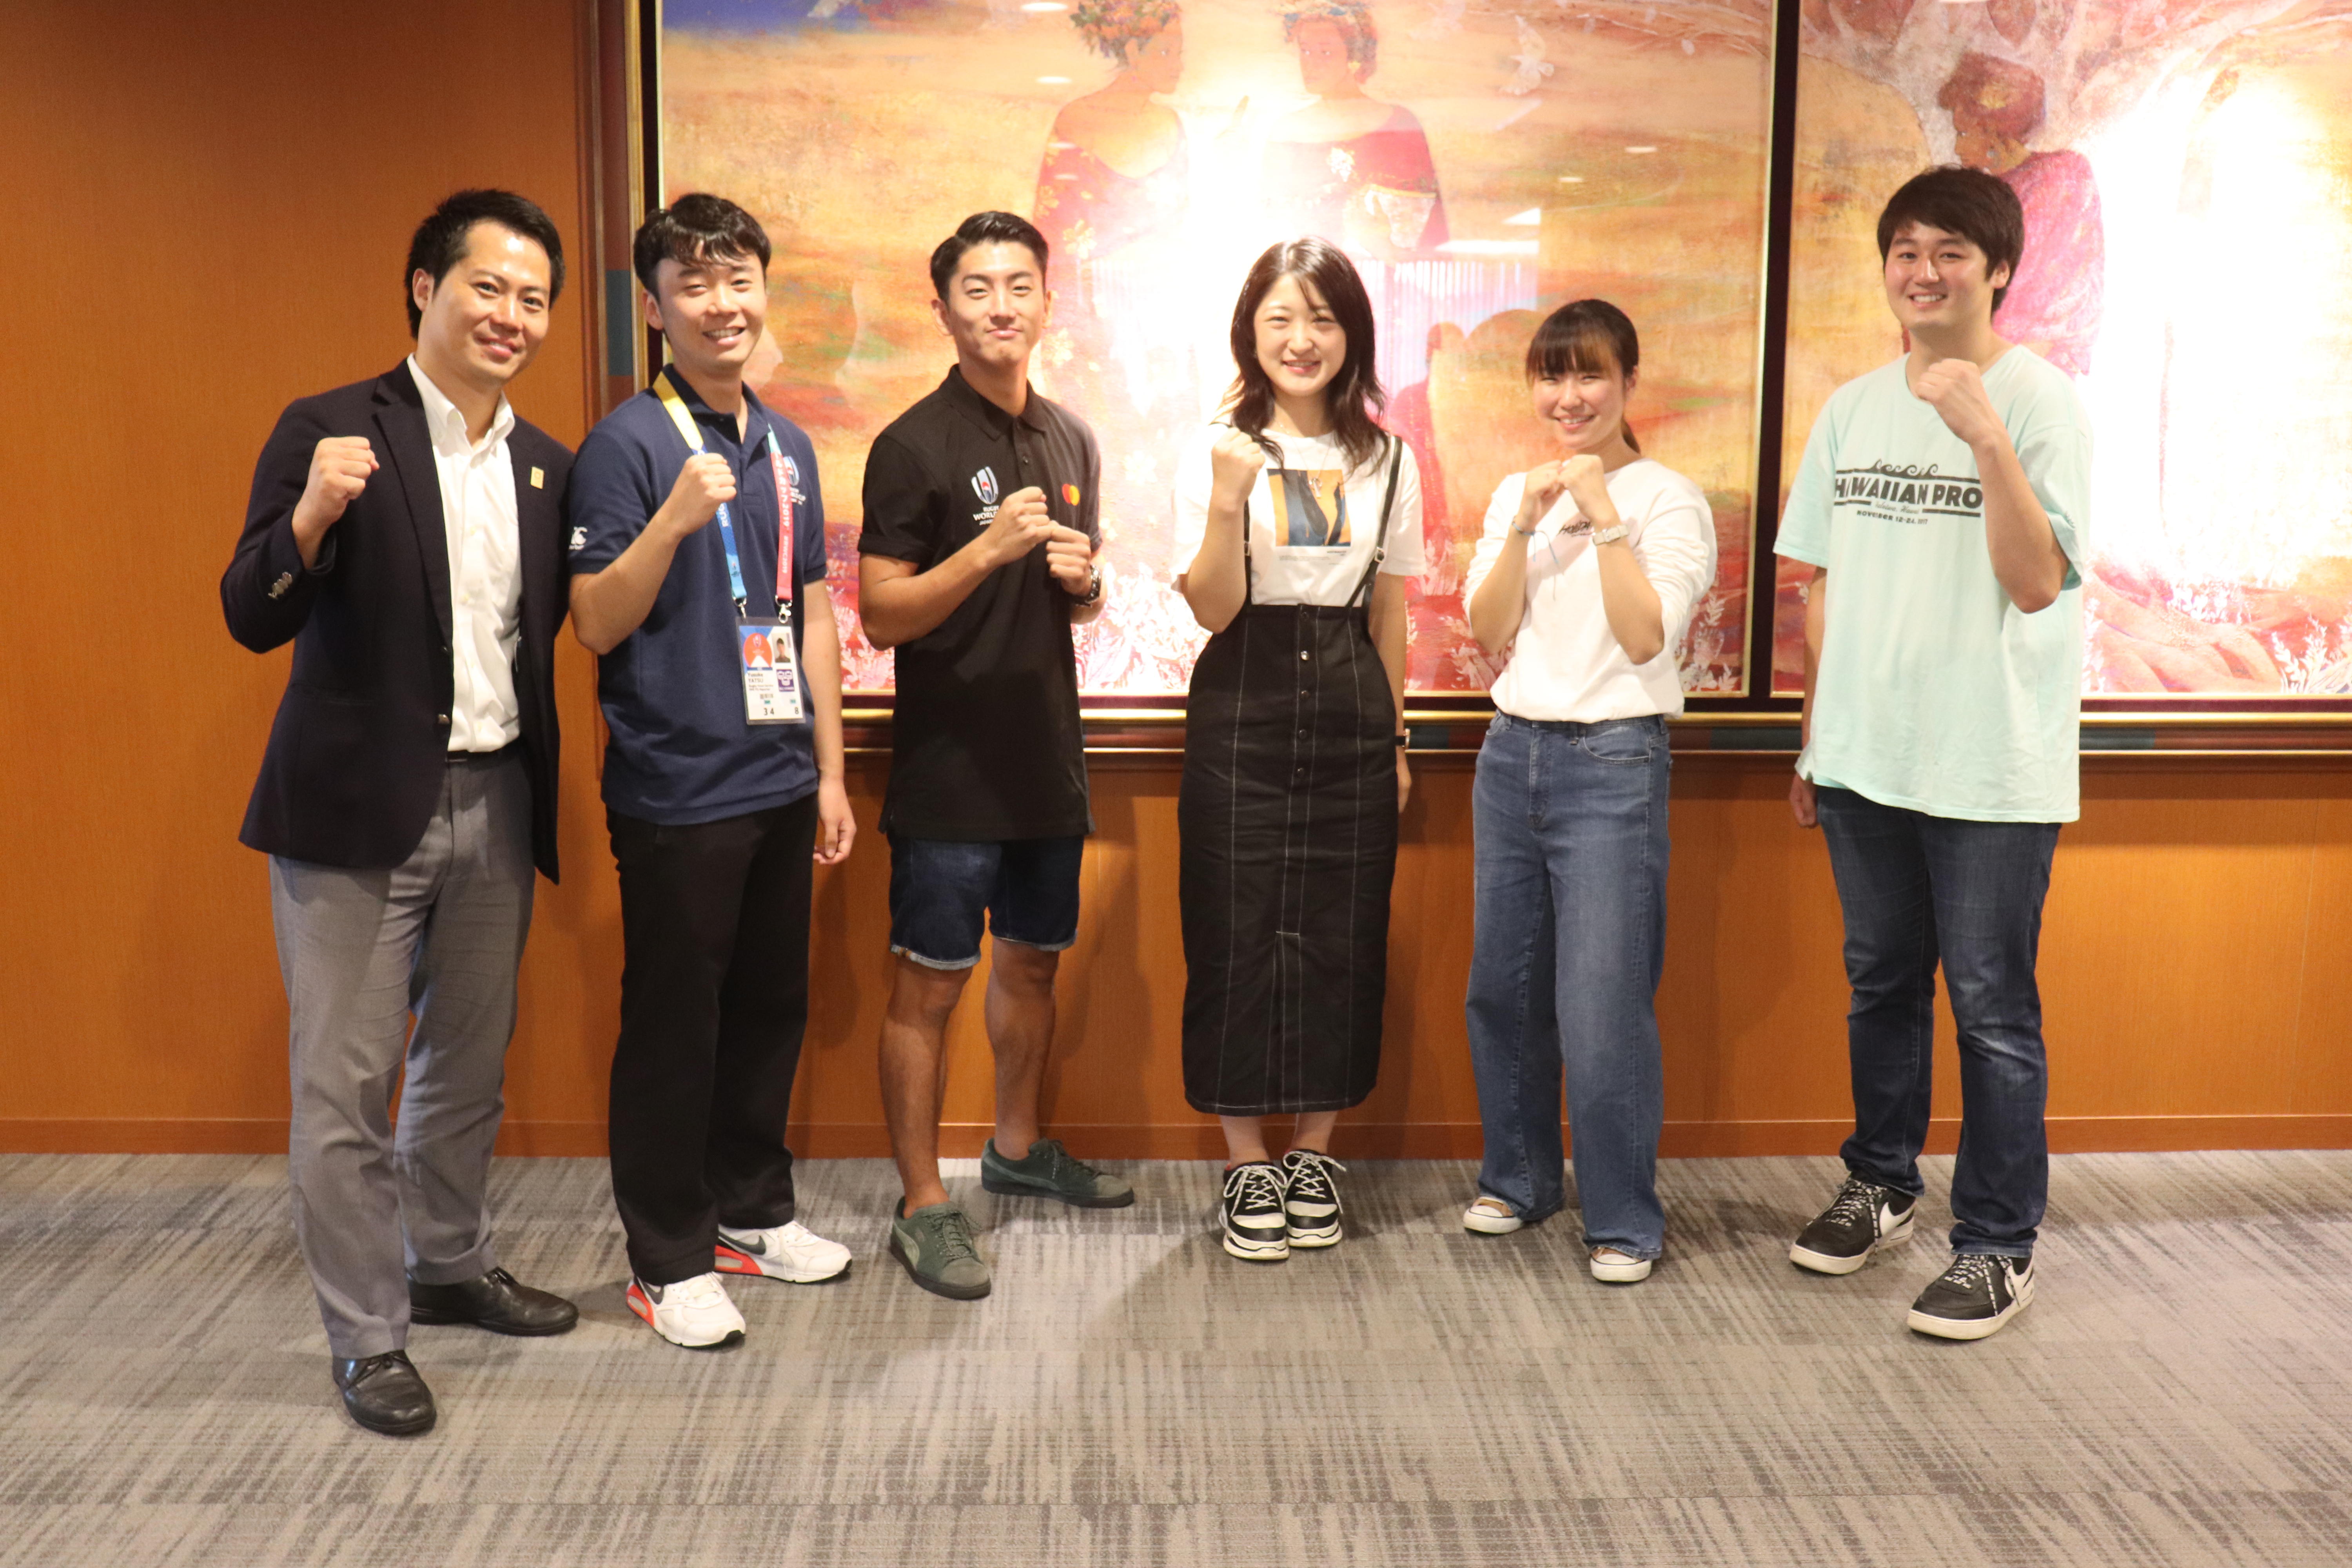 神田外語大学でラグビーワールドカップ2019日本大会にボランティアとして参加する学生の壮行会が開催されました